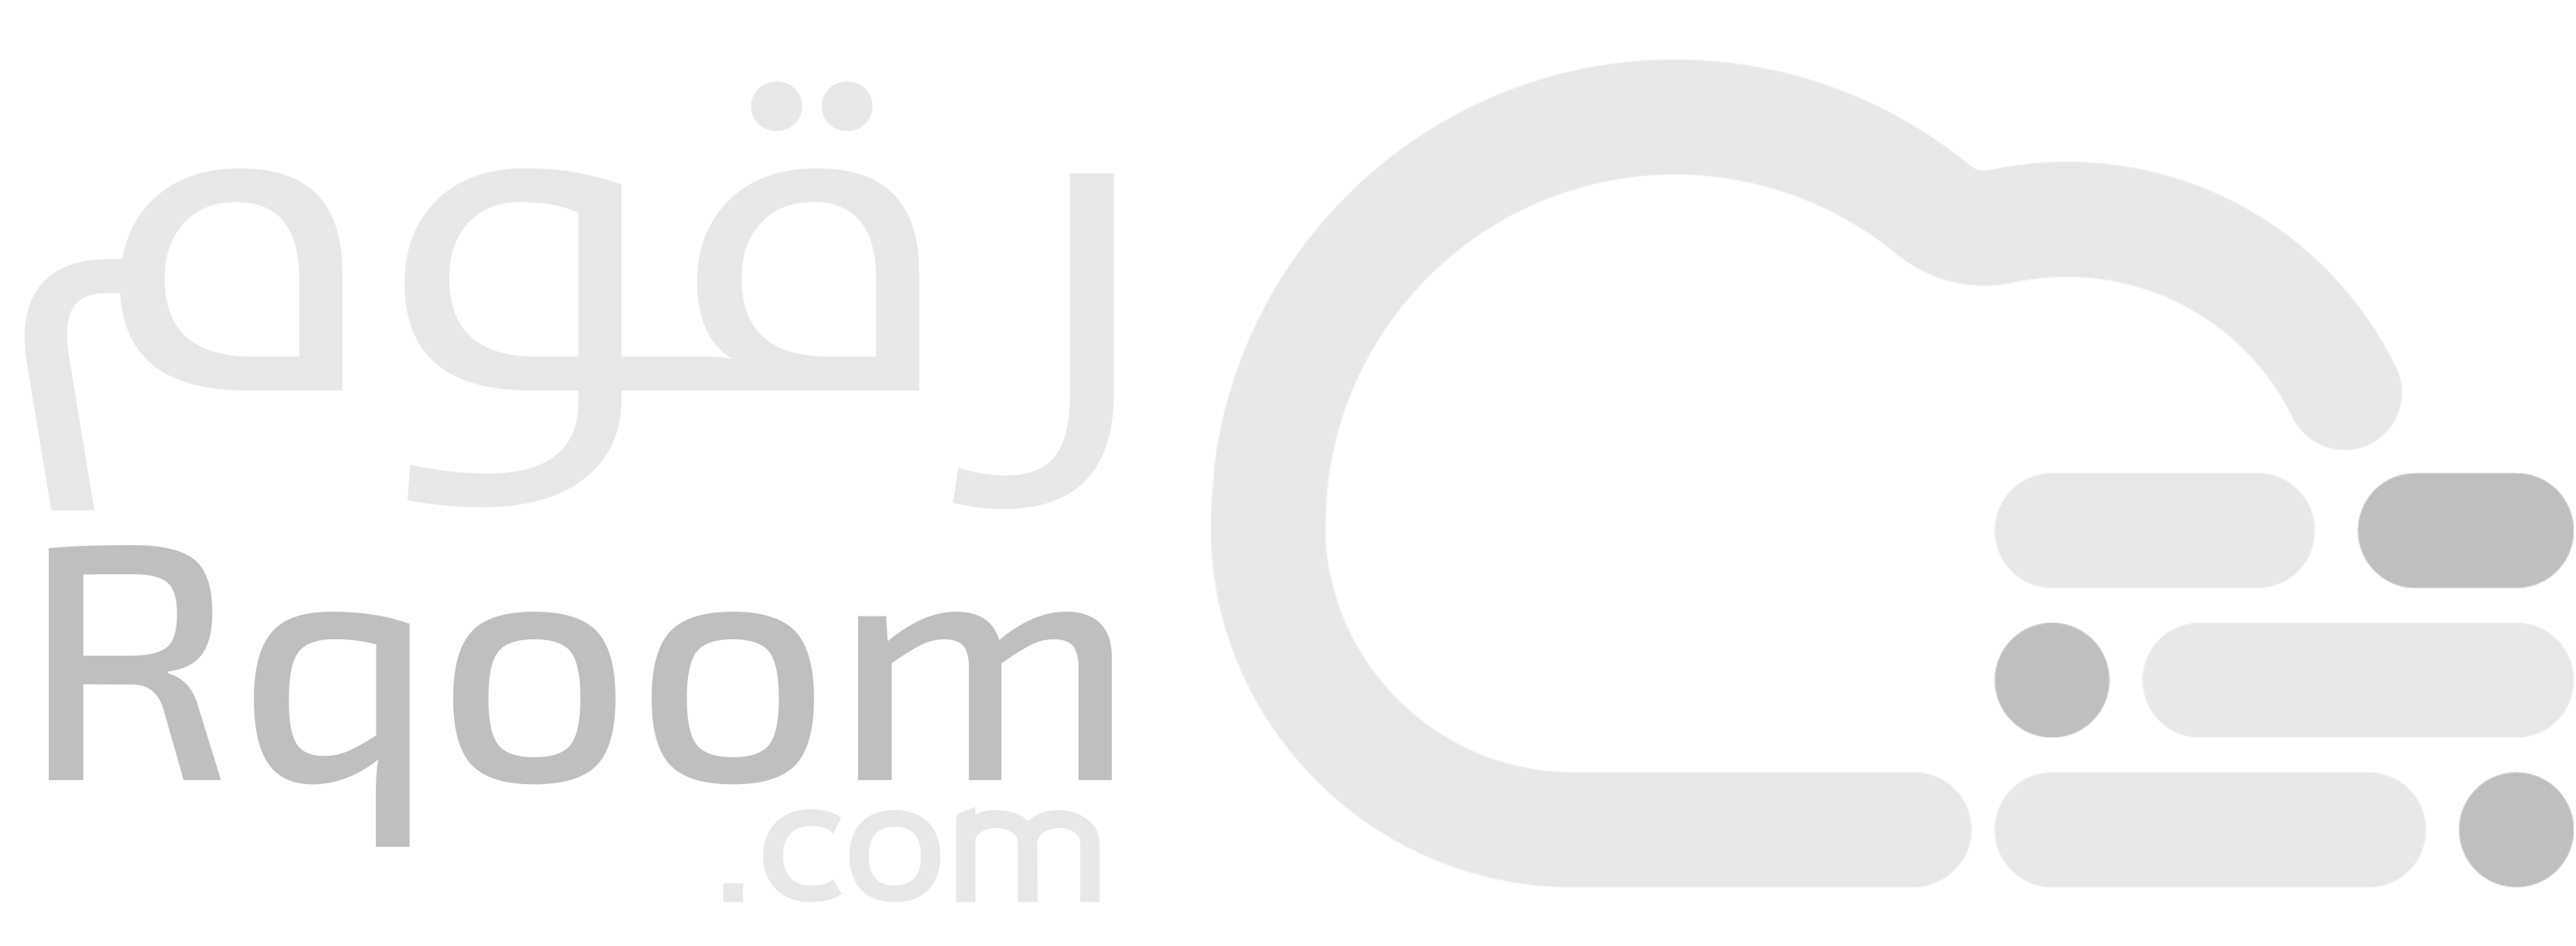 استضافة رقوم | Rqoom Host